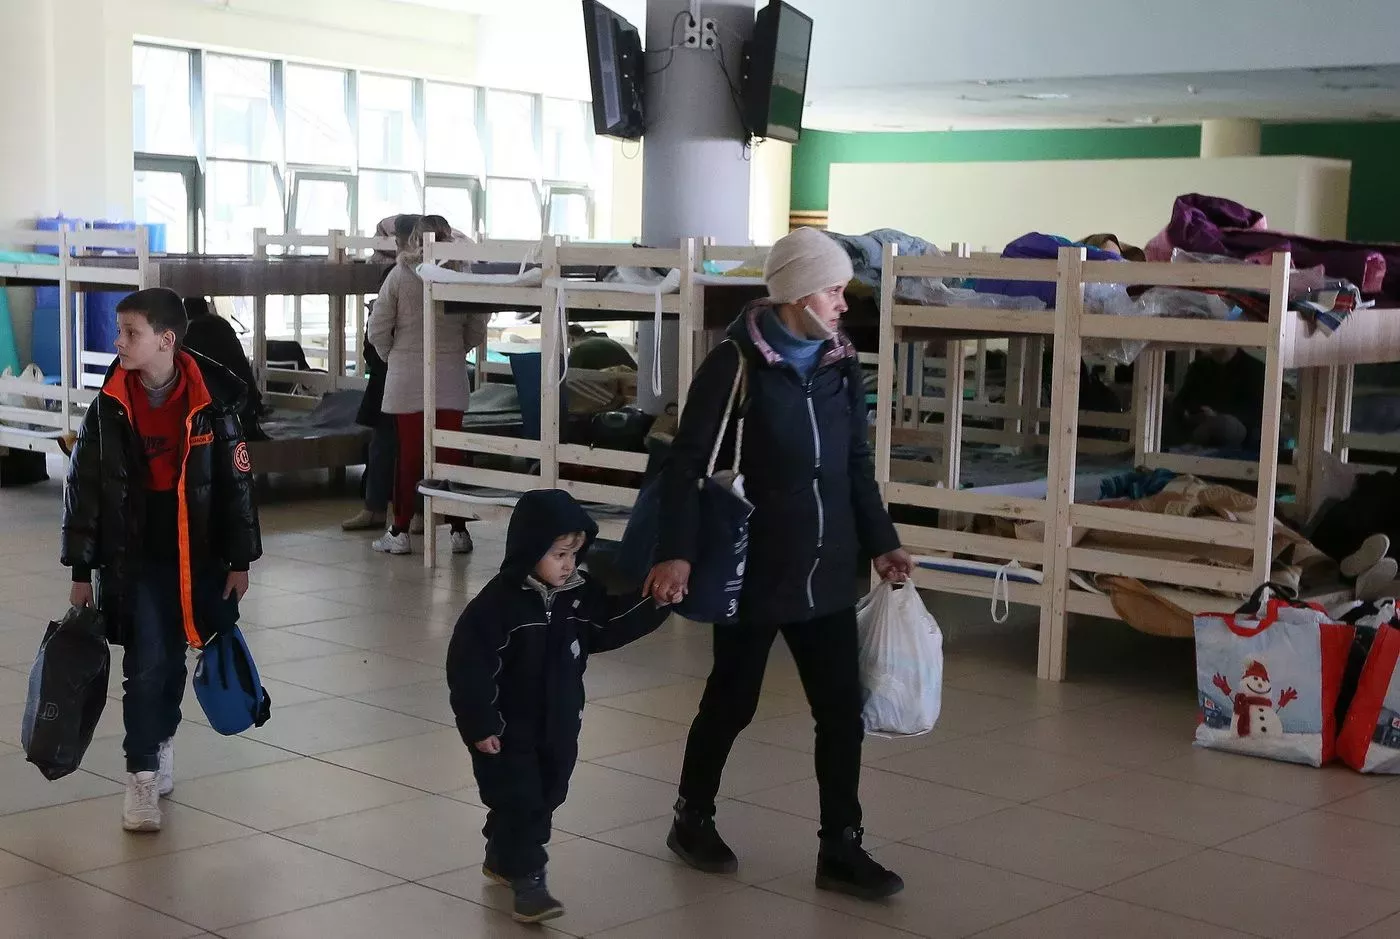 Obyvatelé Ukrajiny utíkají před invazí ruské armády